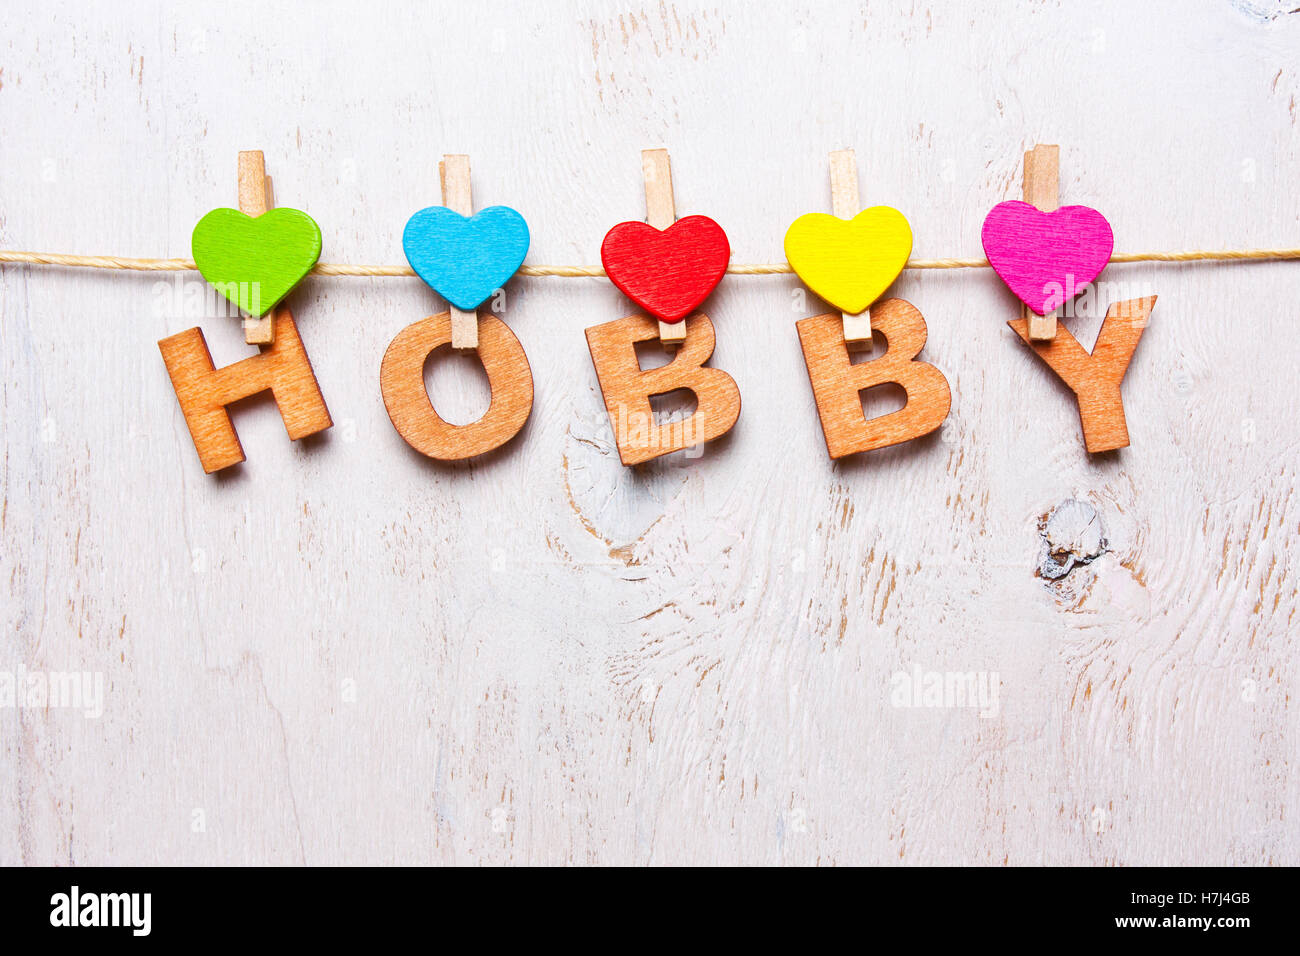 das Wort "Hobby" der hölzernen Buchstaben auf weißem Hintergrund Stockfoto